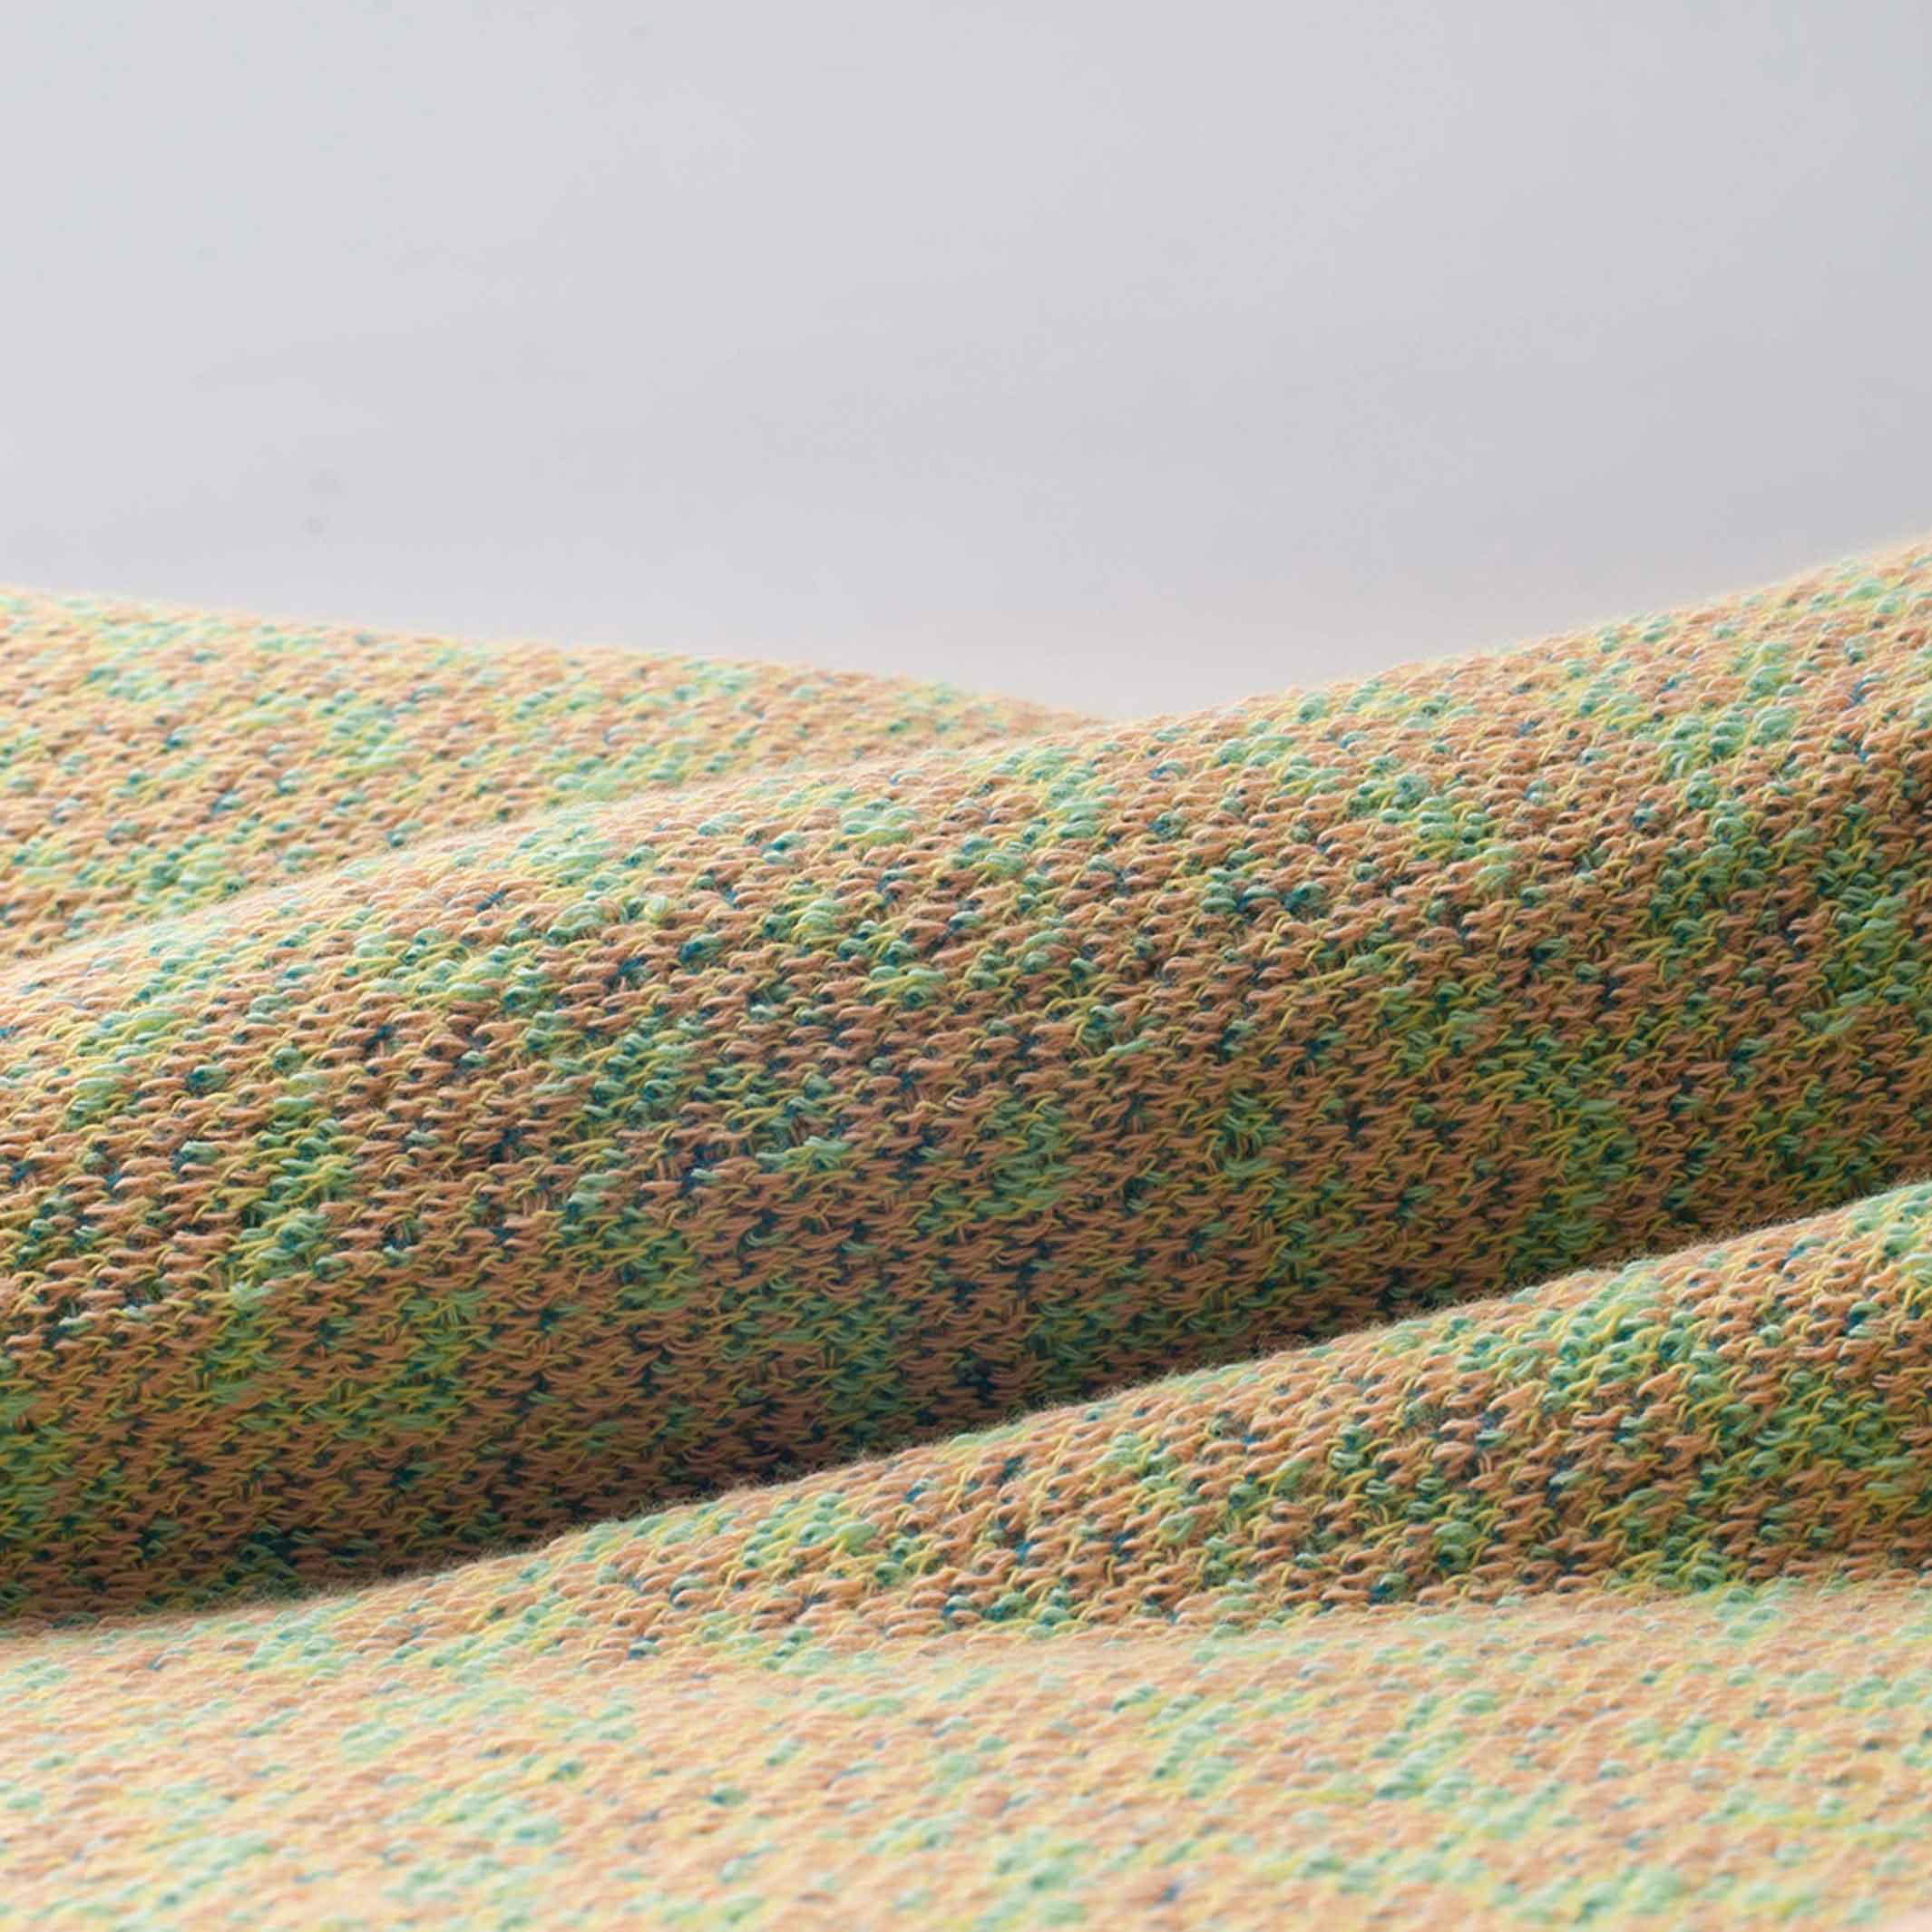 BITMAP LABYRINTHE Vert frais | vert clair COUVRE-LIT | 180x140cm | 90% coton | Cristian Zuzunaga